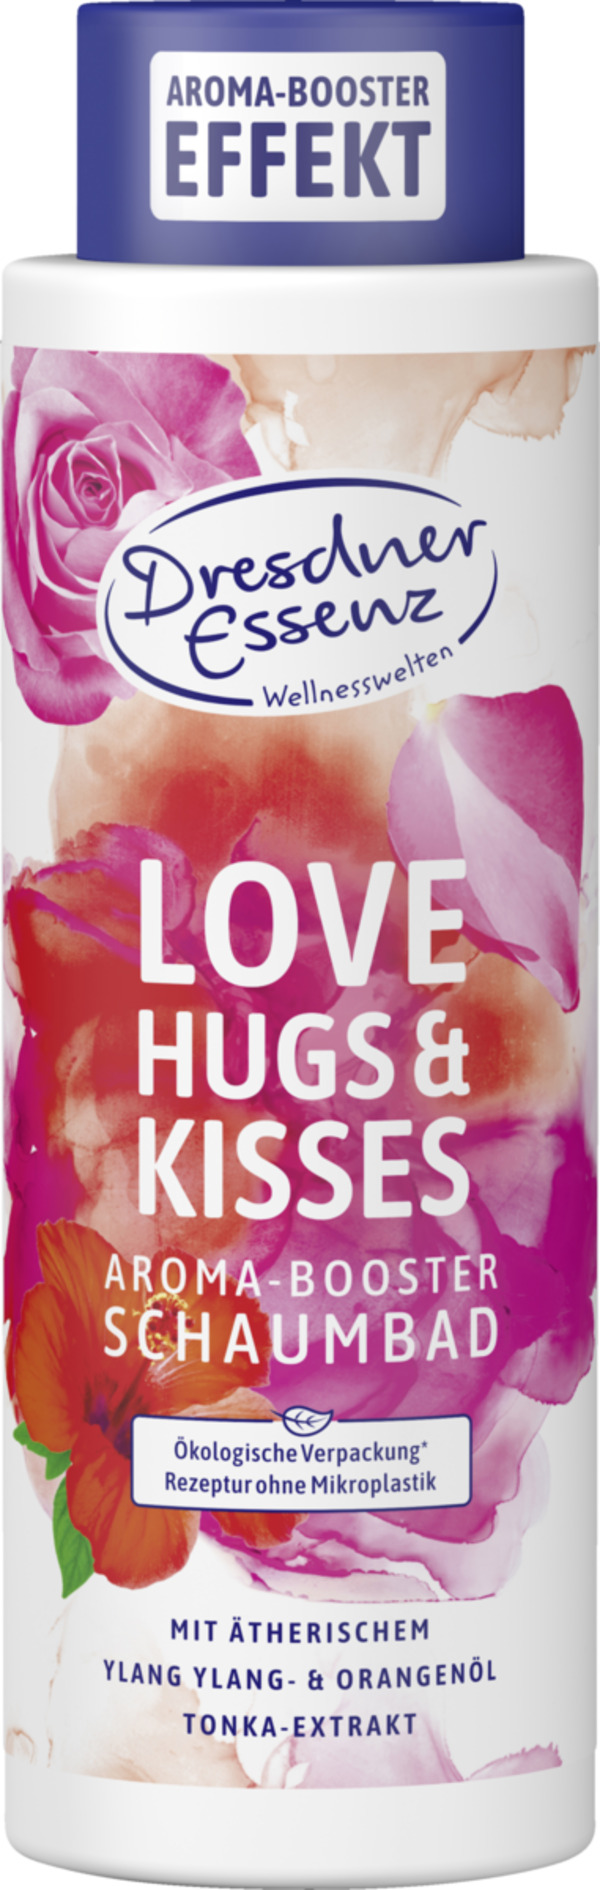 Bild 1 von Dresdner Essenz Aroma-Booster Schaumbad Love, Hugs & Kisses